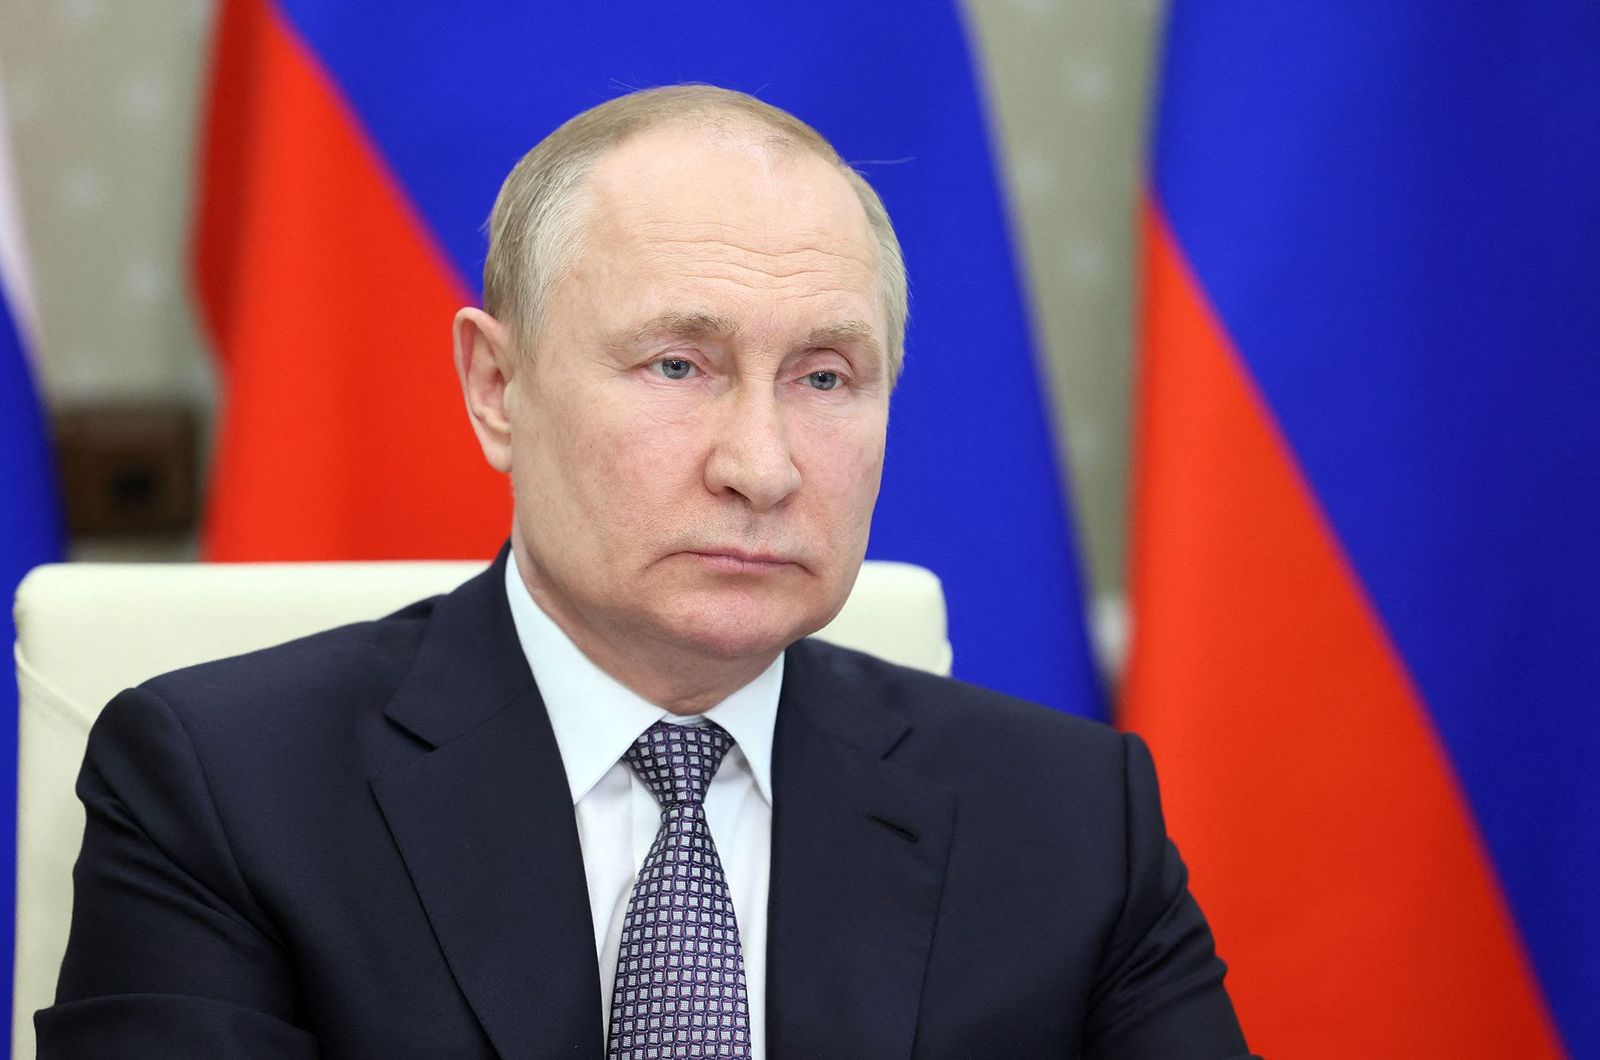 حرب بوتين تعيد اقتصاد روسيا أربعة أعوام إلى الوراء